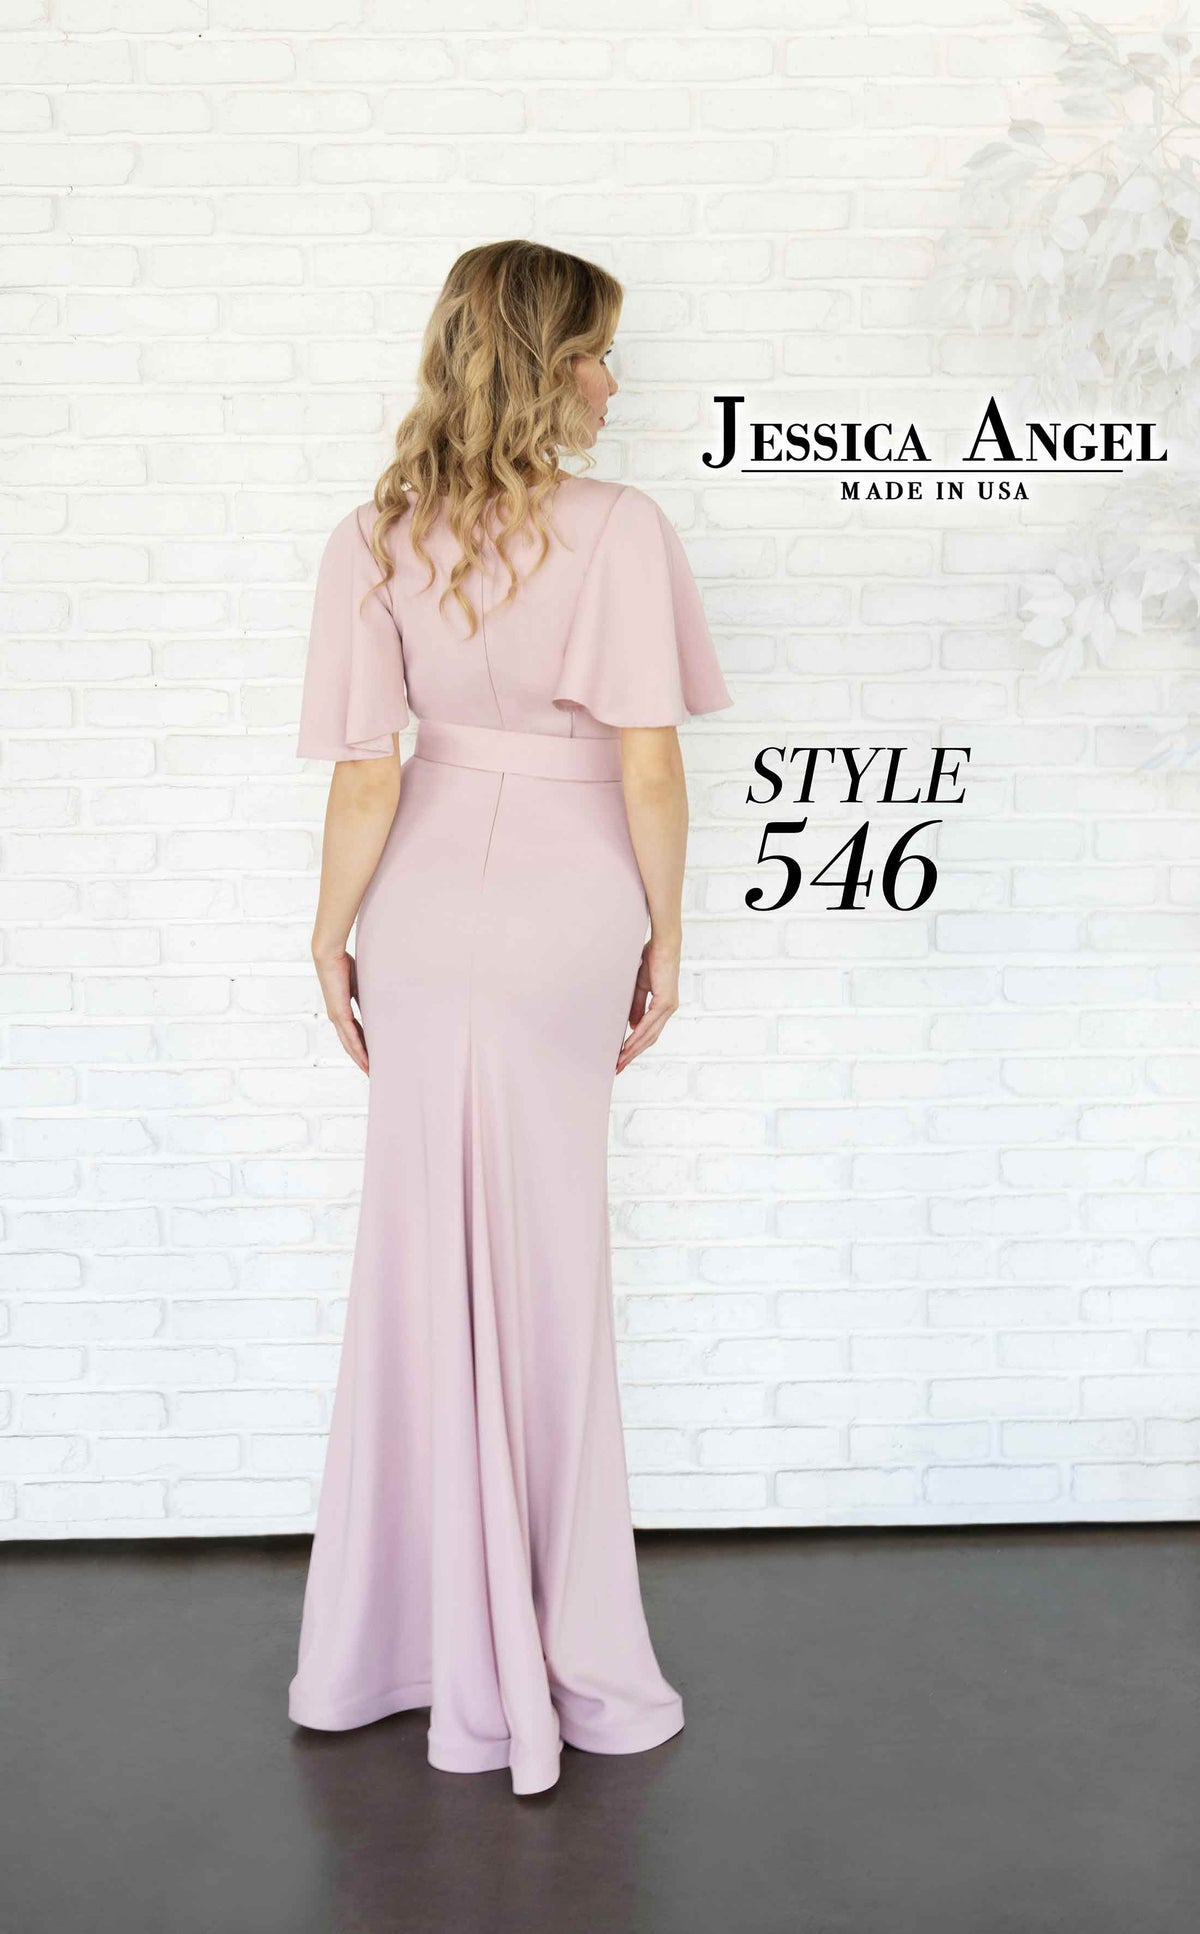 Jessica Angel 546